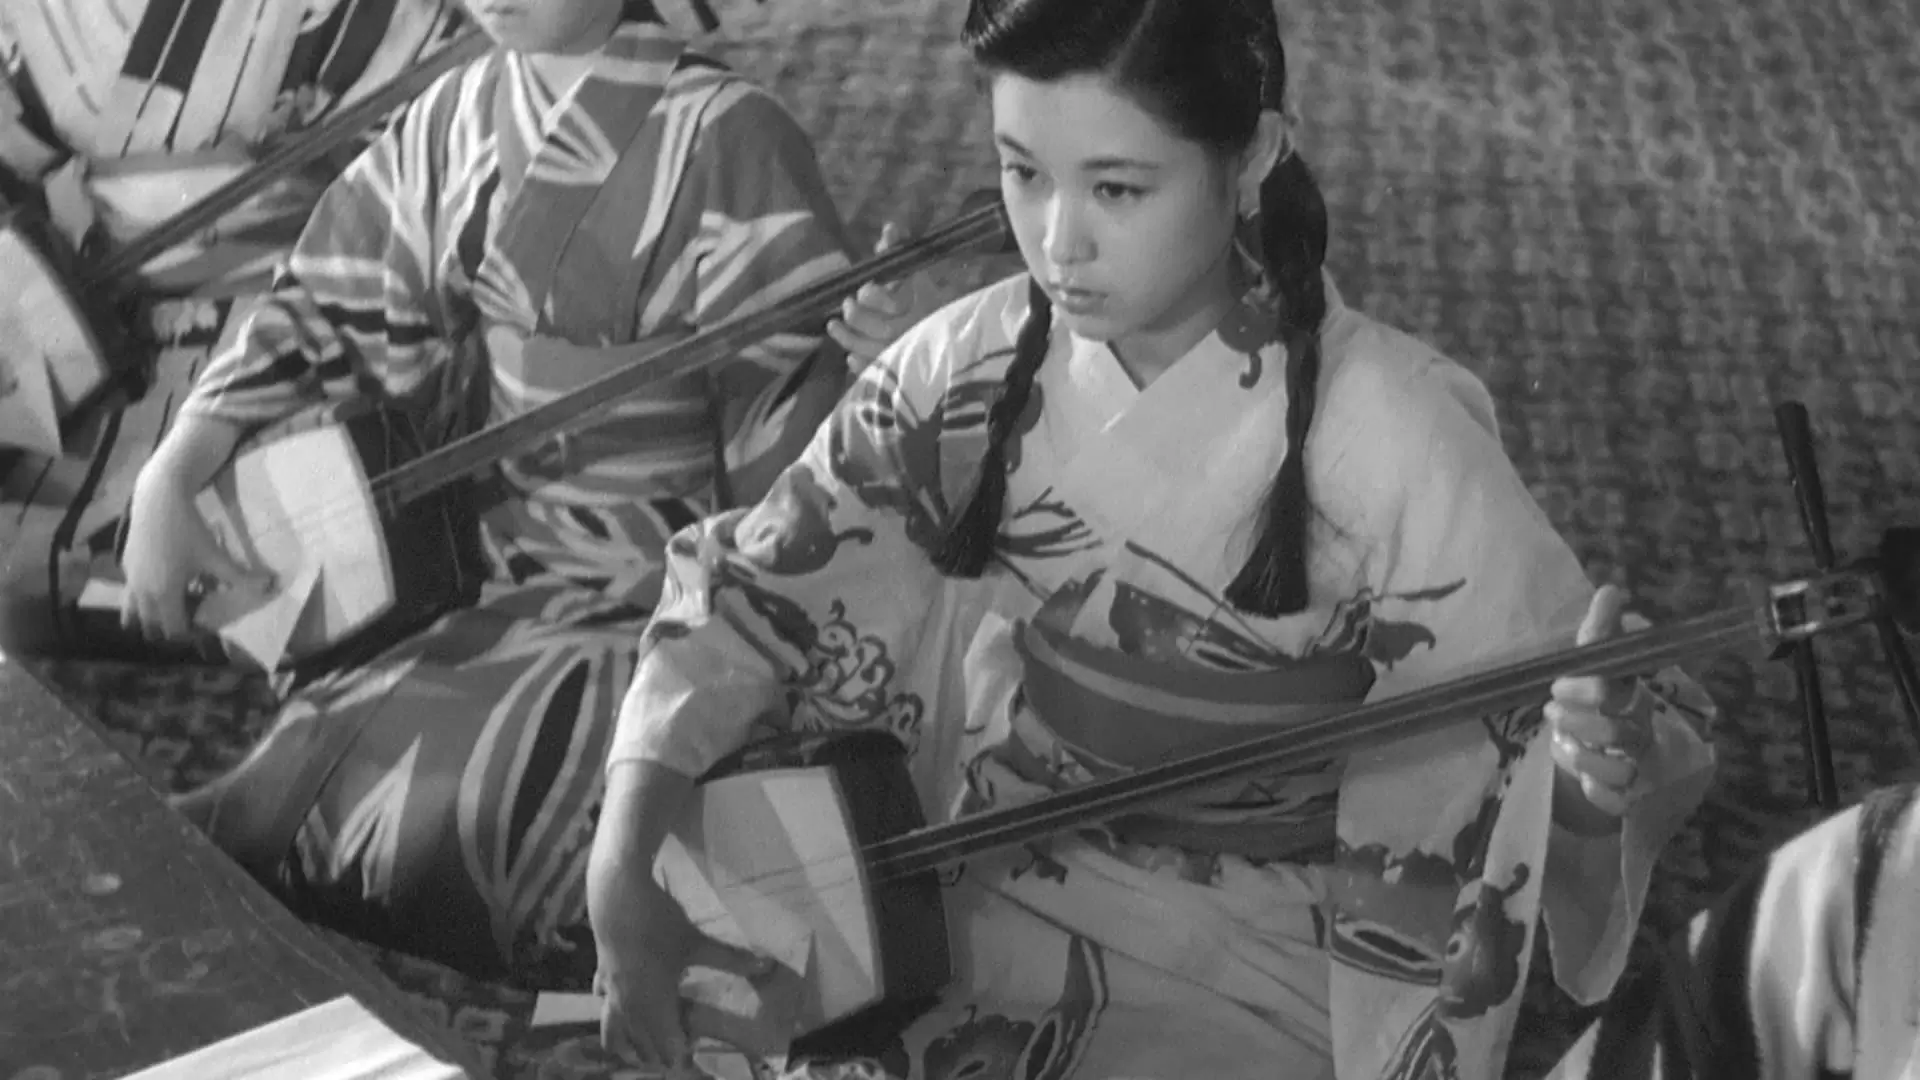 دانلود فیلم Gion bayashi 1953 با زیرنویس فارسی